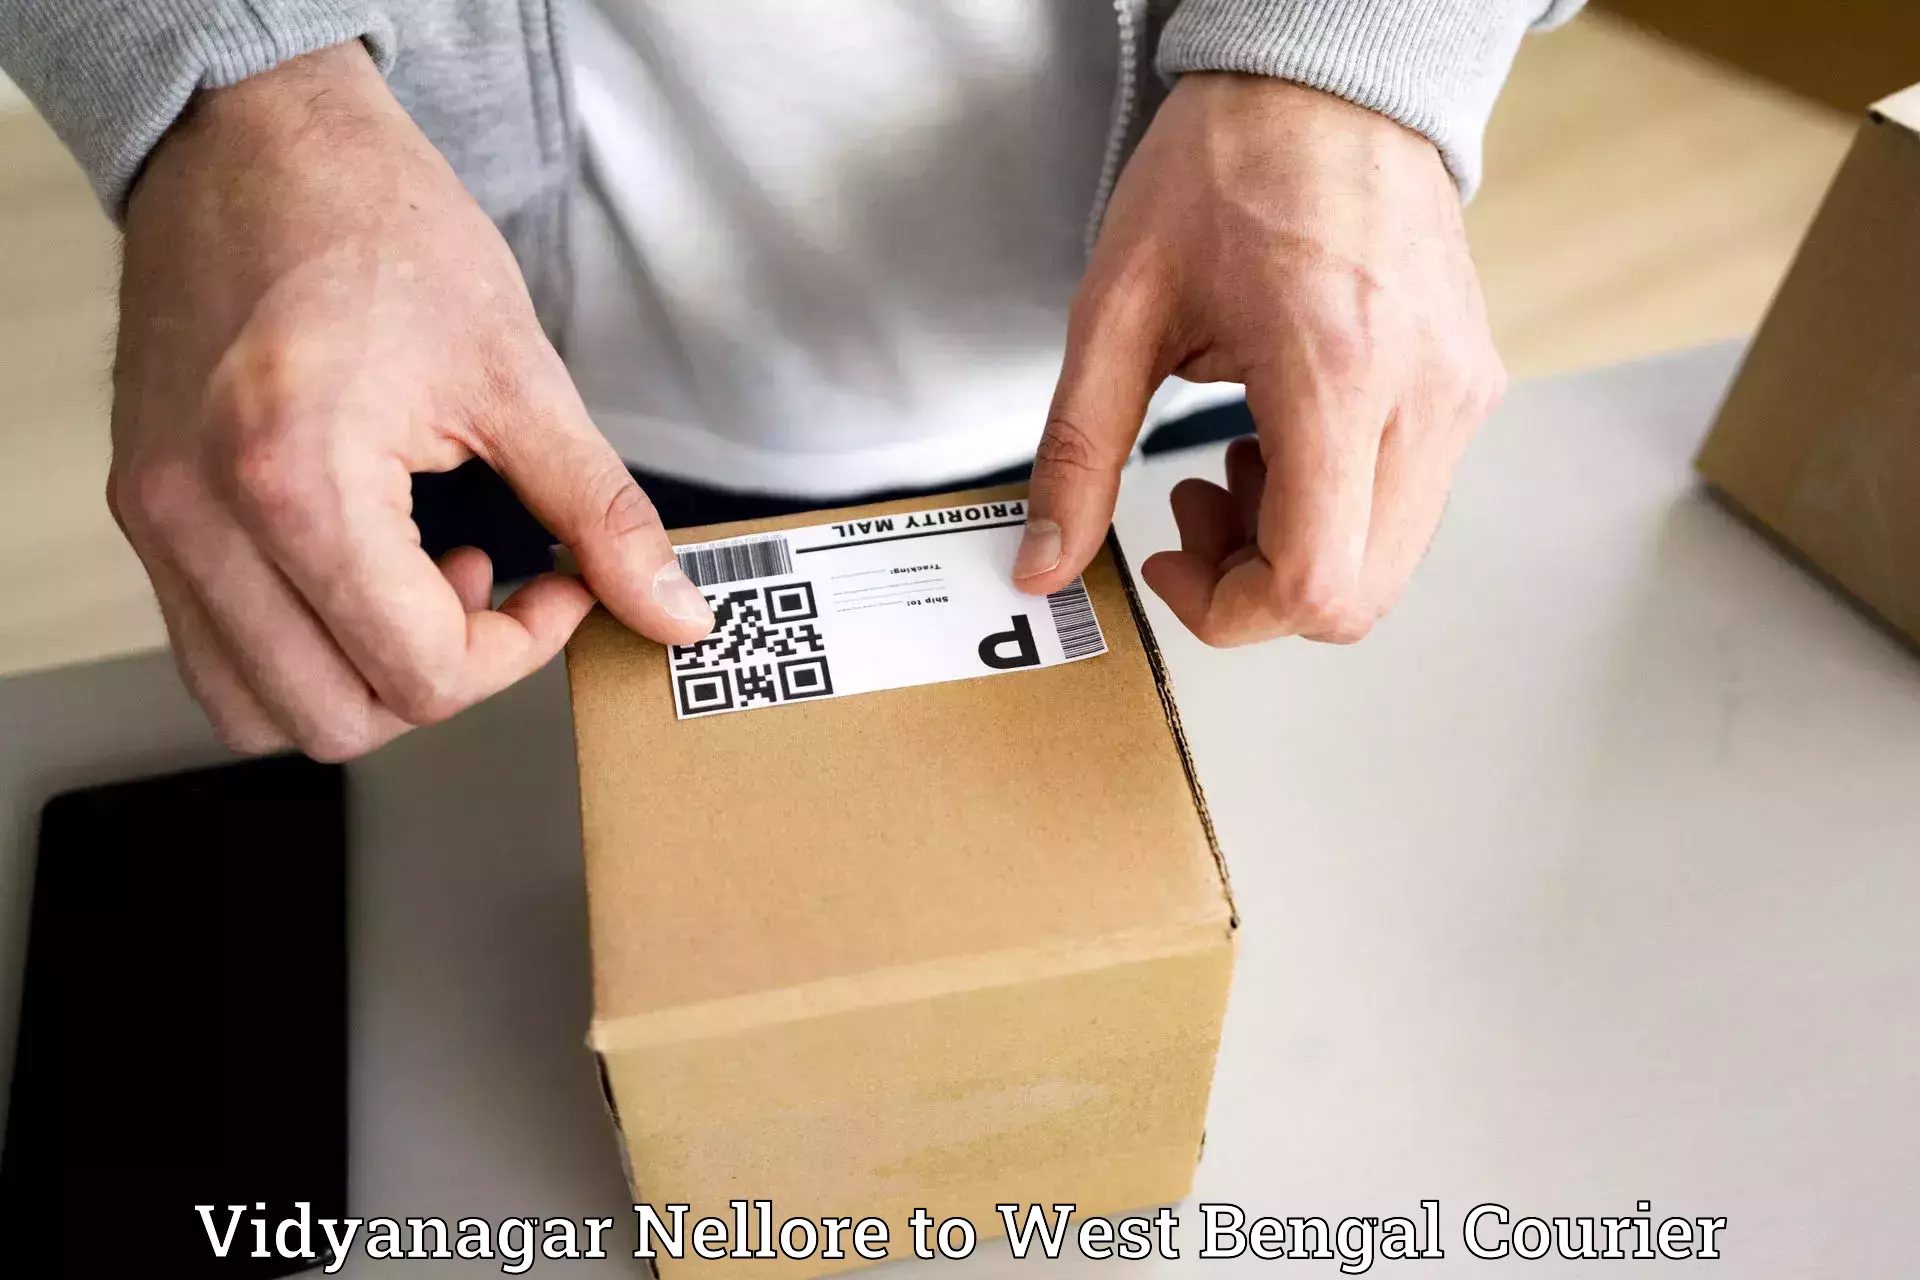 Personal courier services Vidyanagar Nellore to Bankura